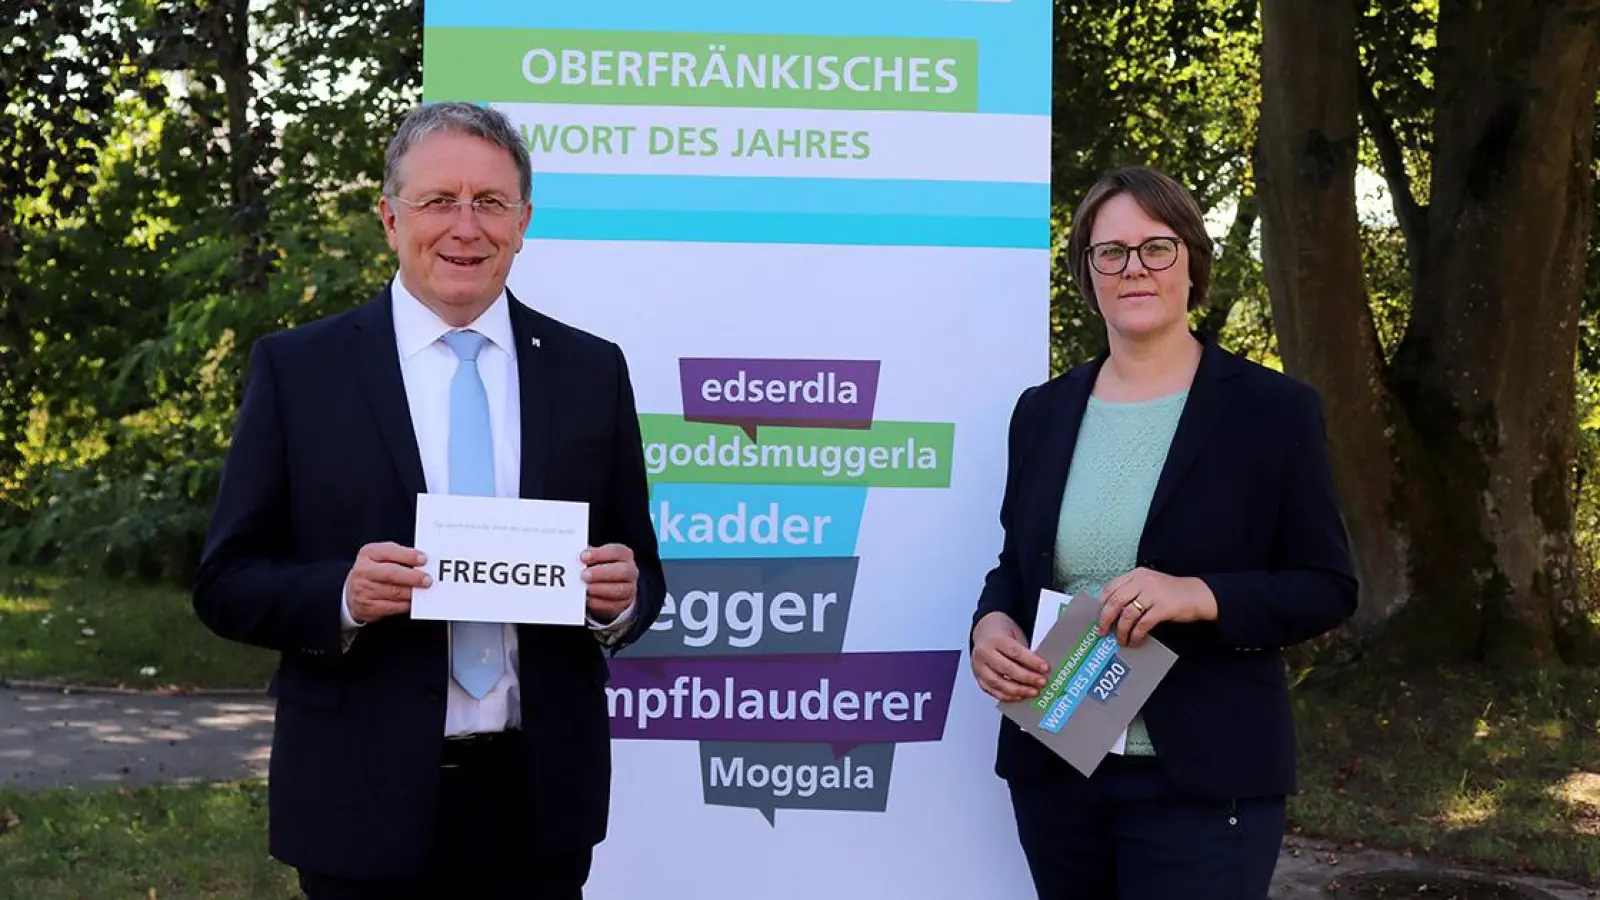 Nachrichten Oberfranken: Oberfränkisches Wort des Jahres 2020 (Foto: red)